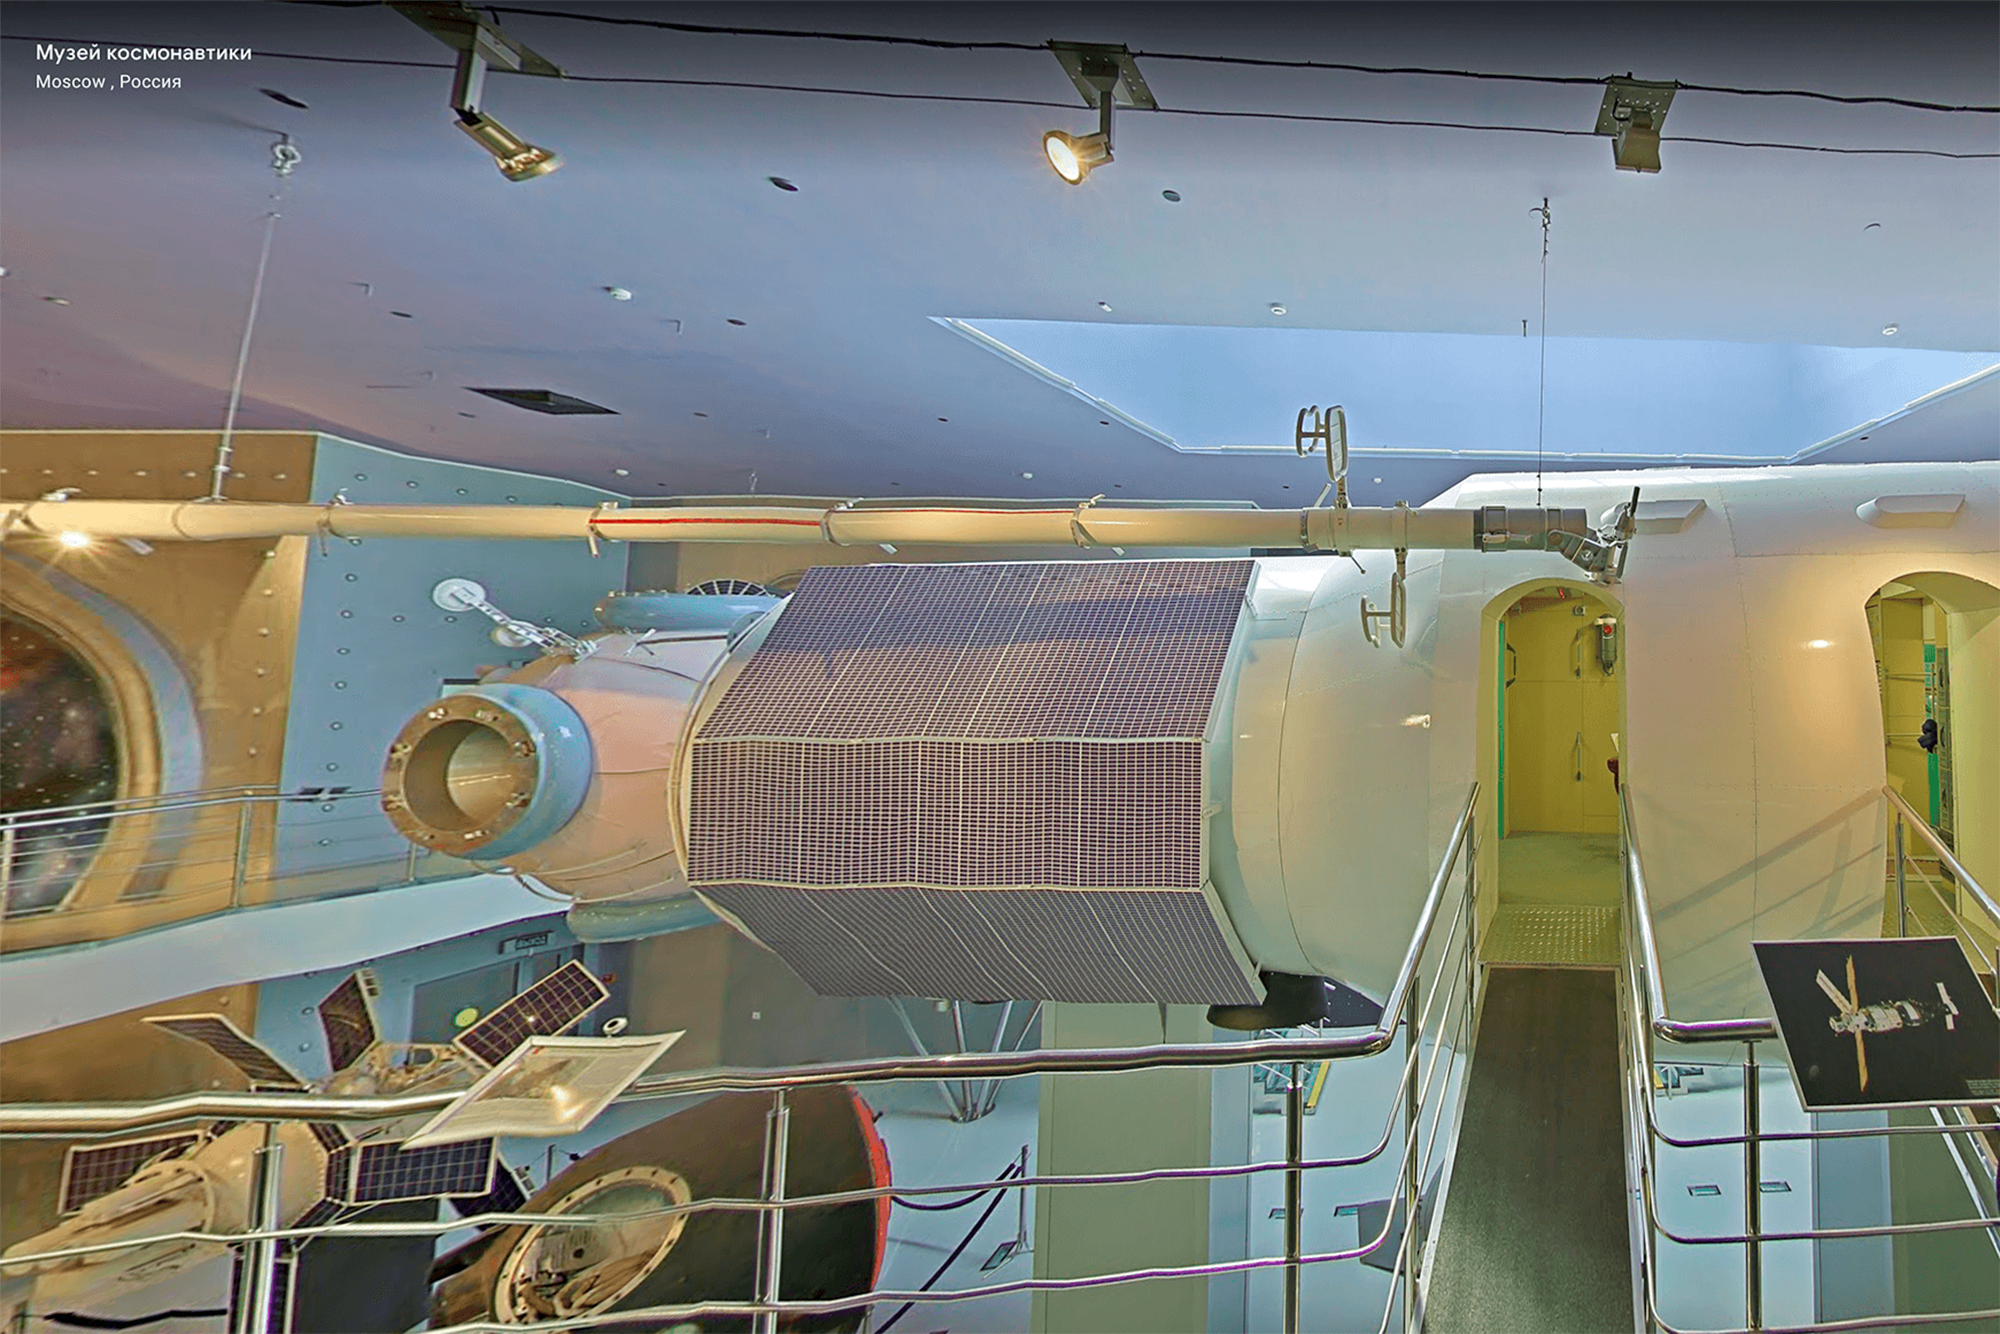 Макет блока станции «Мир» — самый популярный экспонат музея. С него начинается виртуальный тур